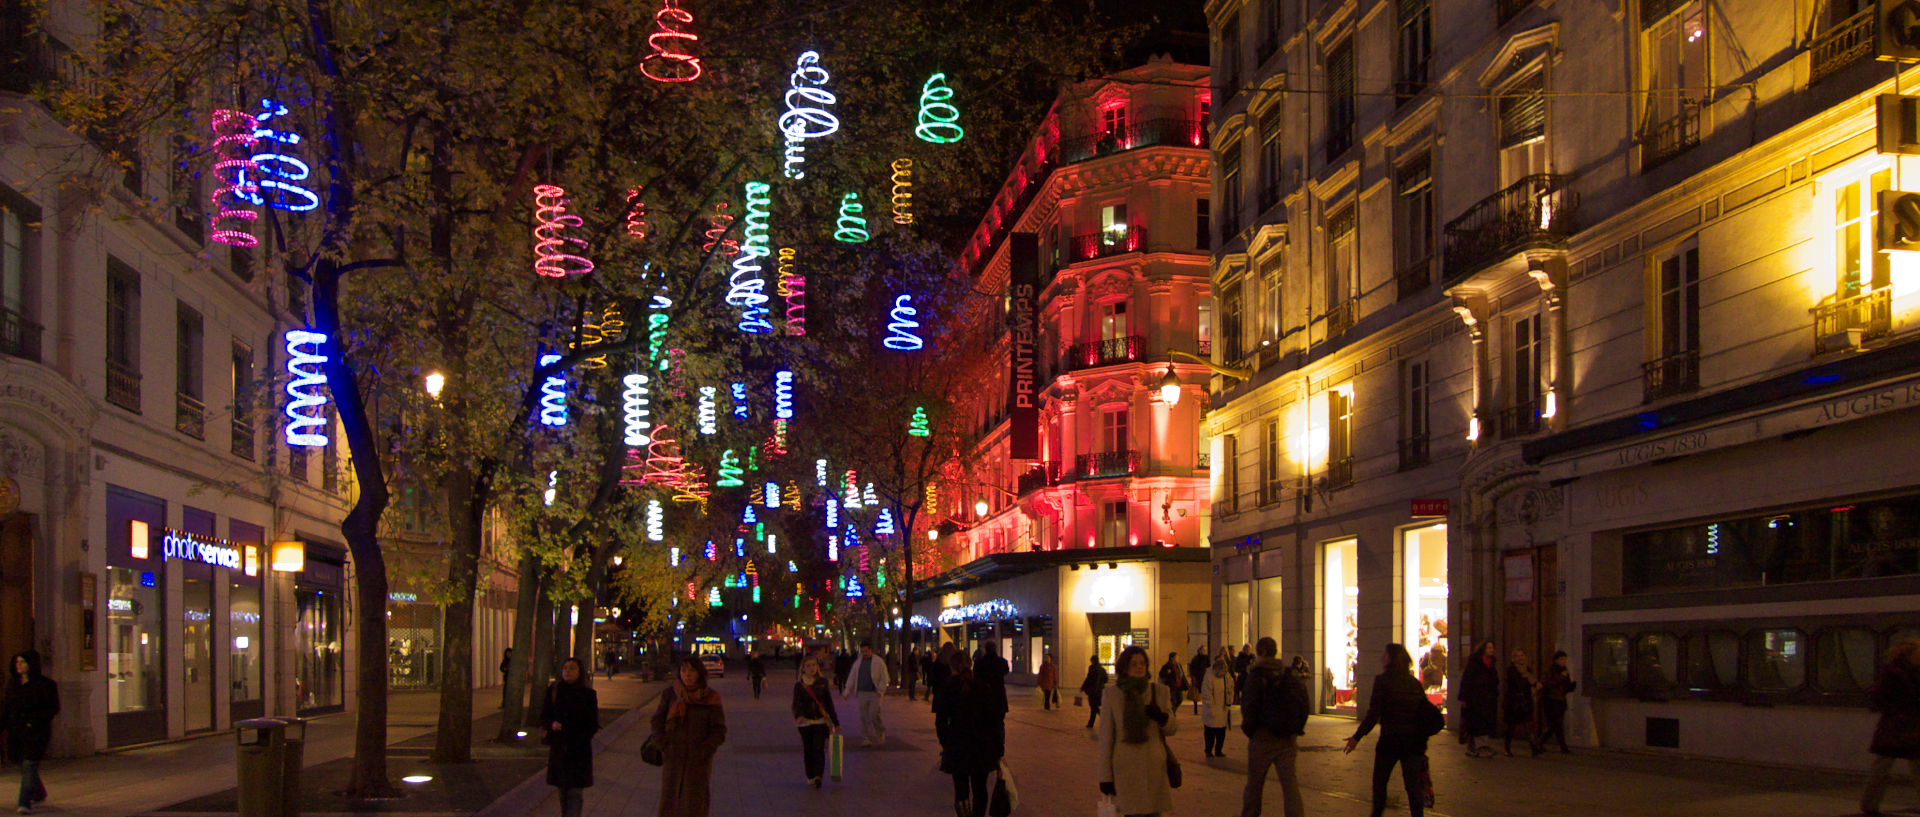 Mercredi 3 décembre 2008 (3), rue de la République, à Lyon.